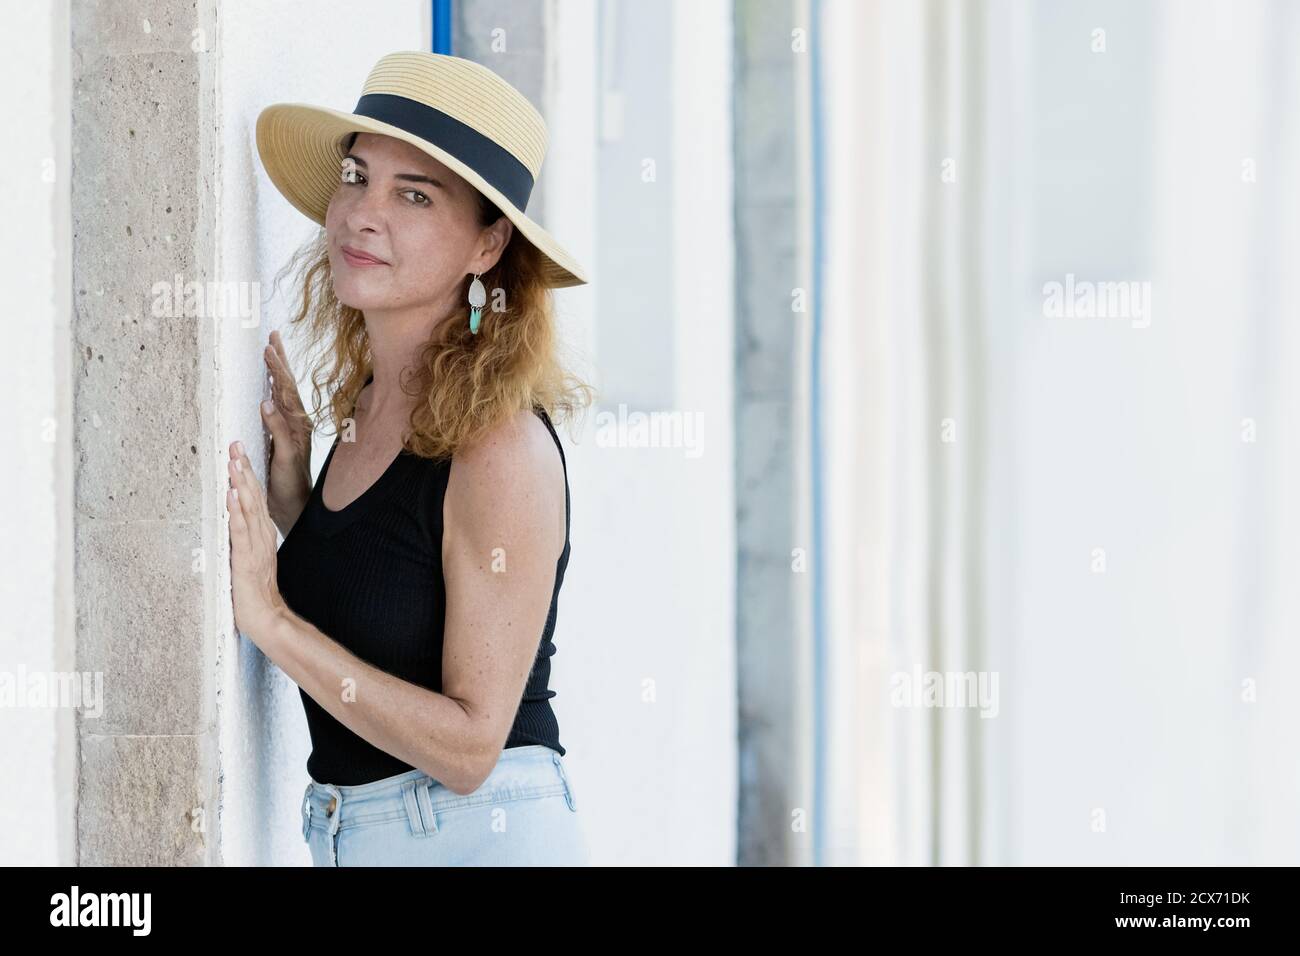 Portrait d'une femme 40-45 ans regardant l'appareil photo portant des vêtements décontractés et un chapeau de paille, sérieux, la pose sur un mur. Banque D'Images